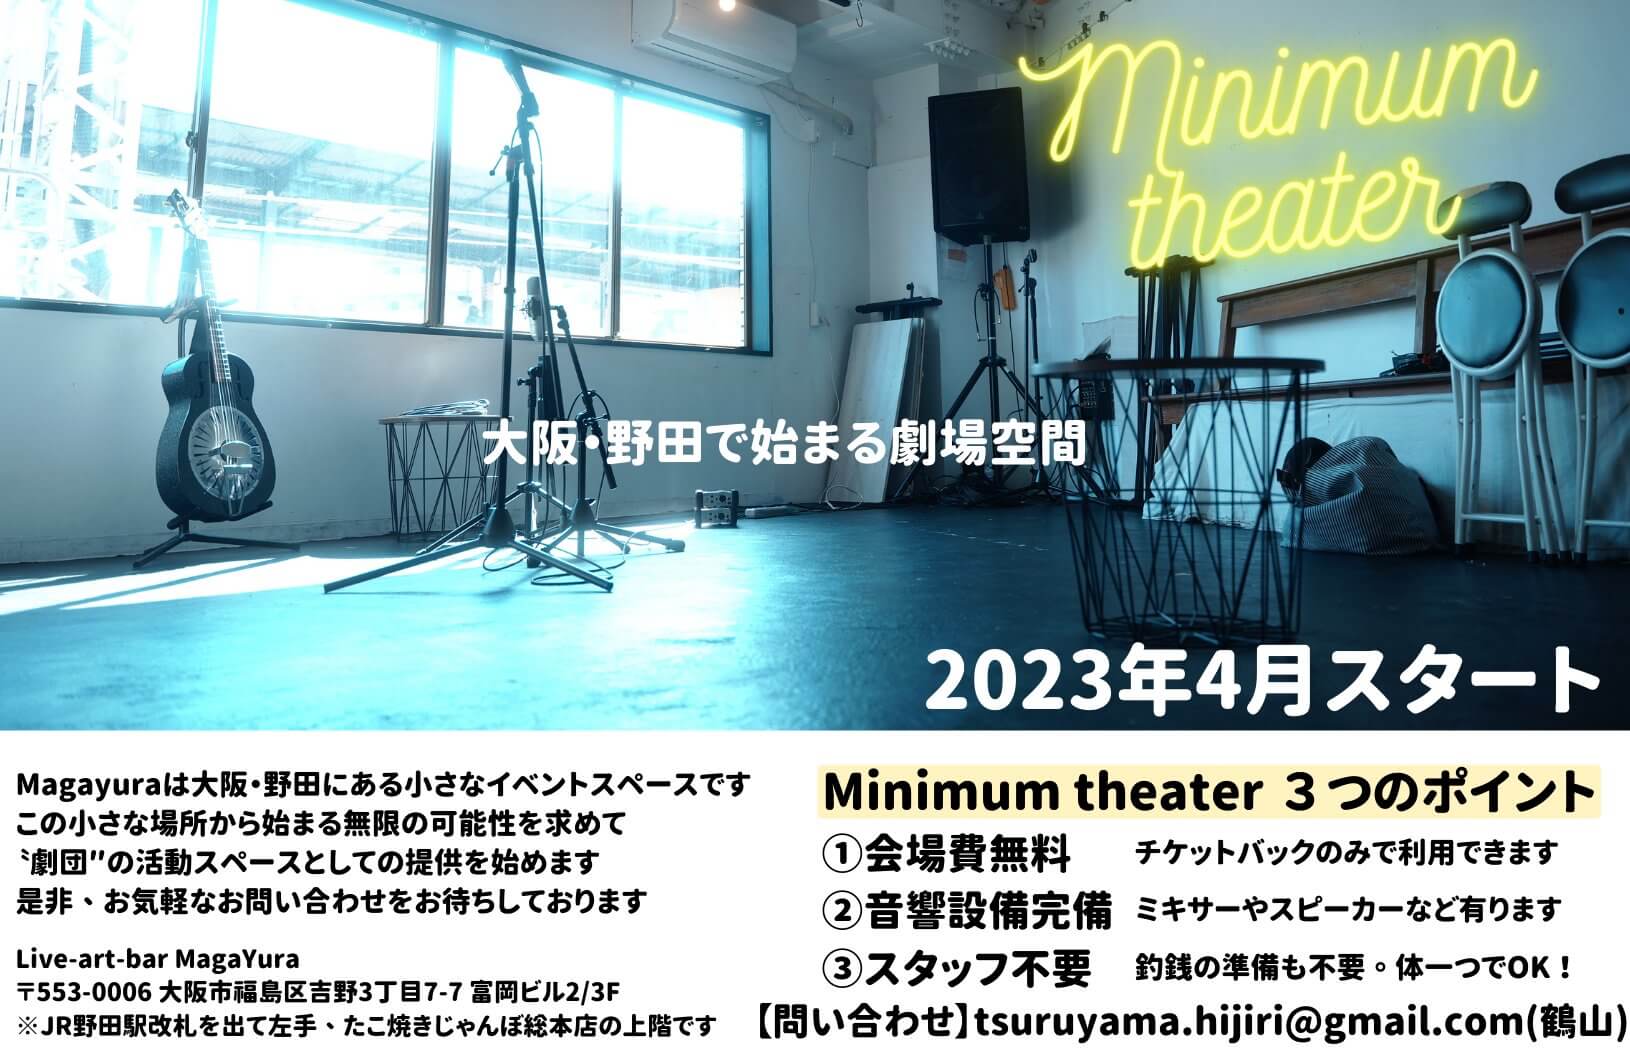 2023年4月、新しい劇場空間 「Minimum Theater」が野田エリアに誕生。 会場費無料・音響設備完備・スタッフ不要のスペース